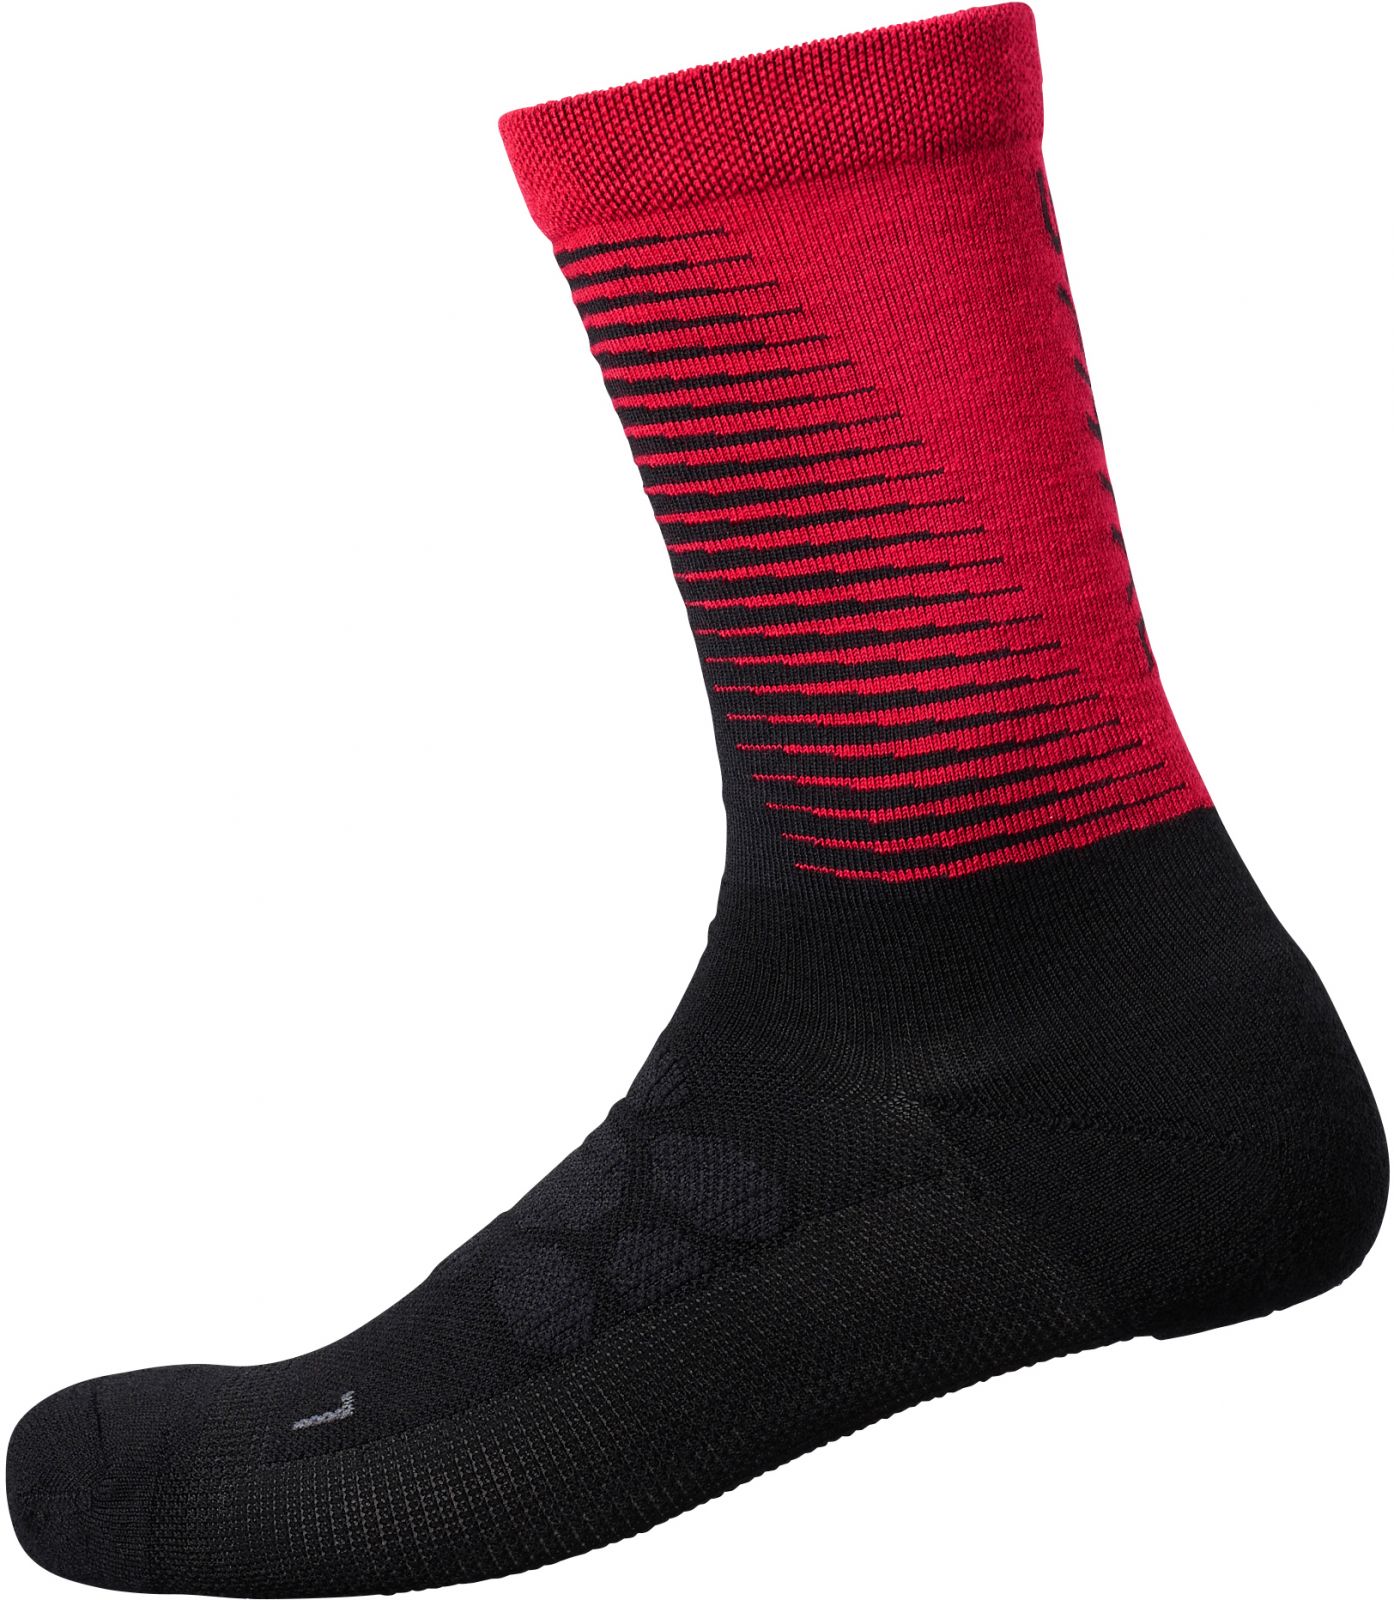 SHIMANO S-PHYRE MERINO TALL ponožky, červená, L-XL (45-48)